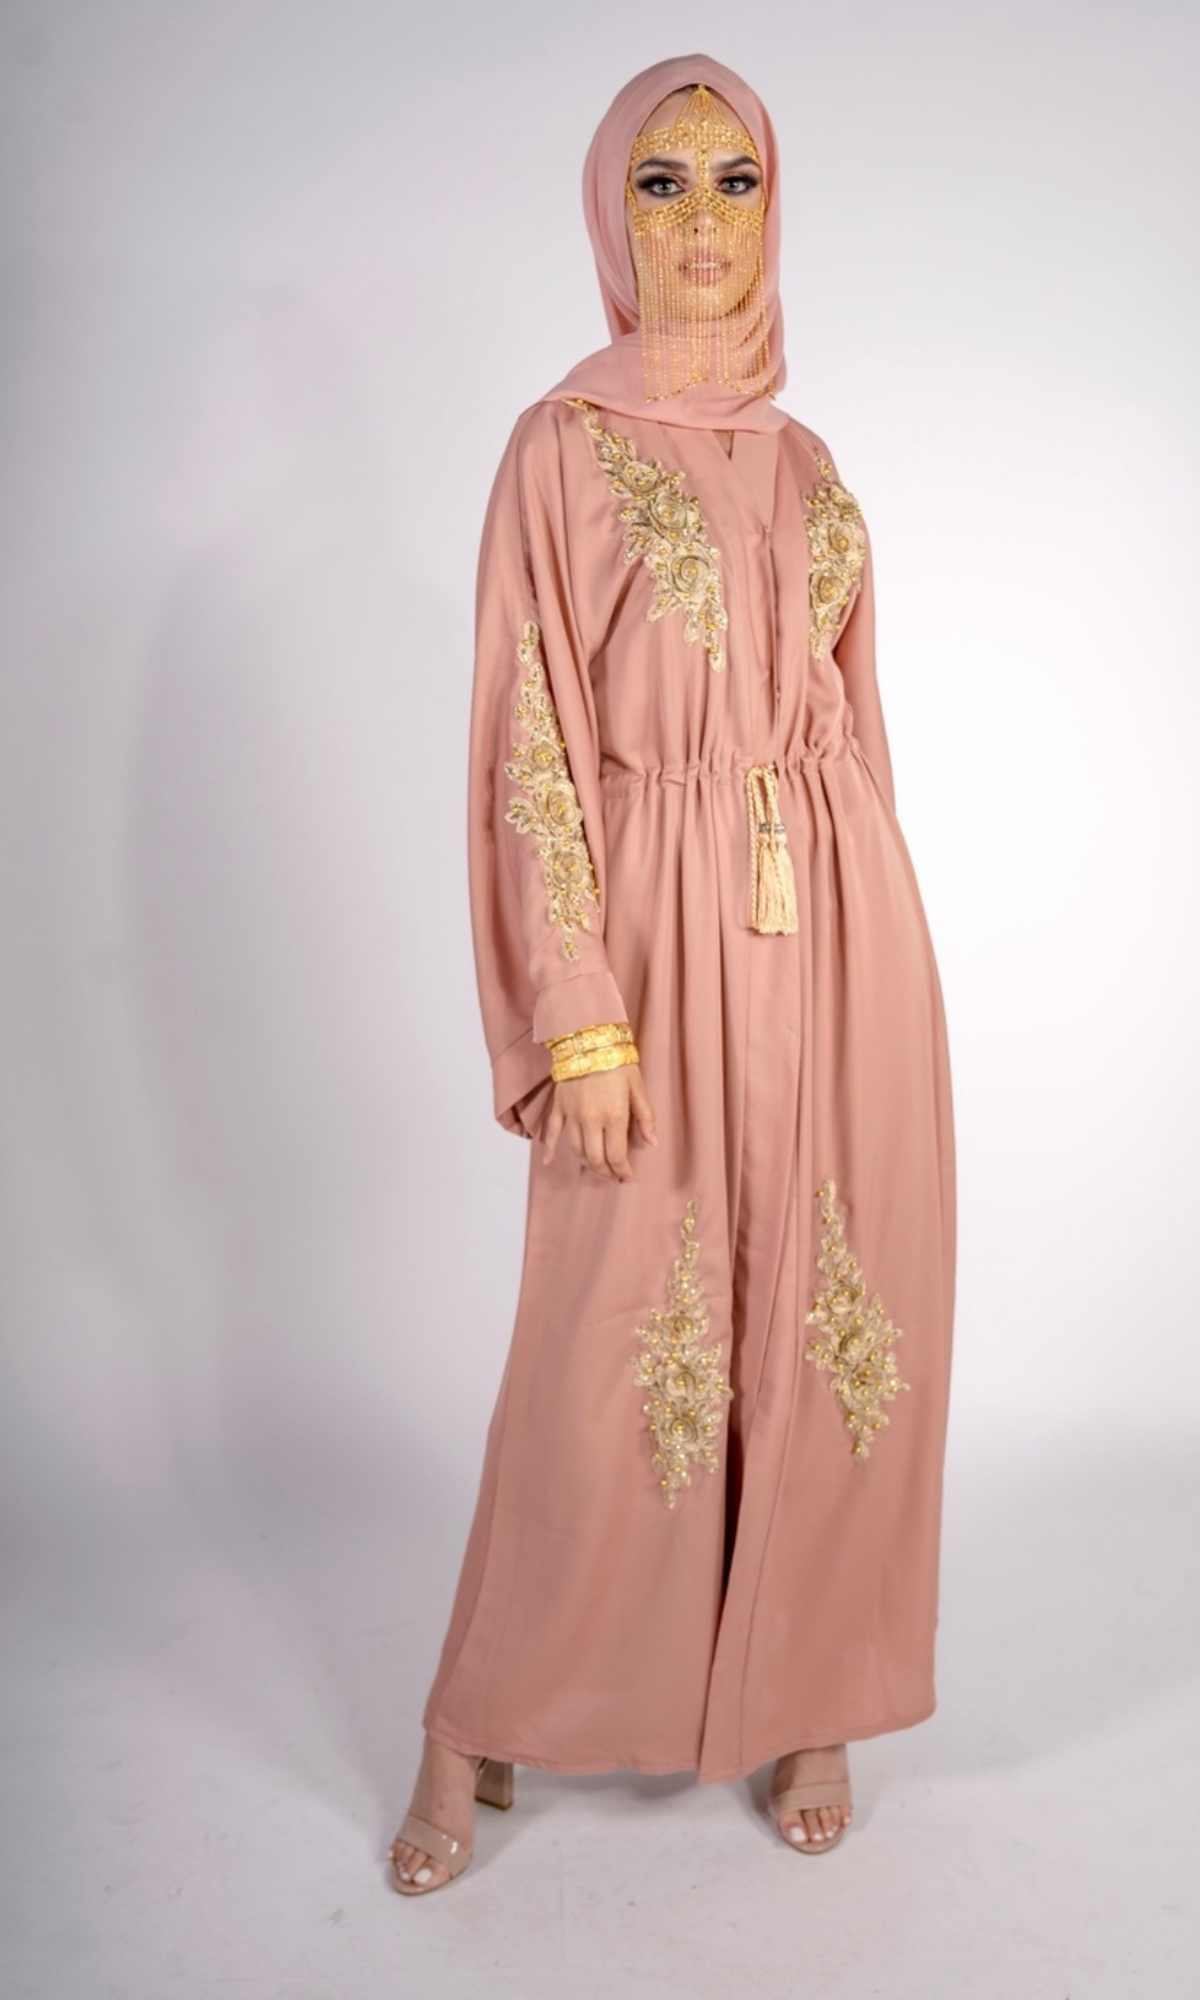 Sheikha Embellished Jacket - Pink